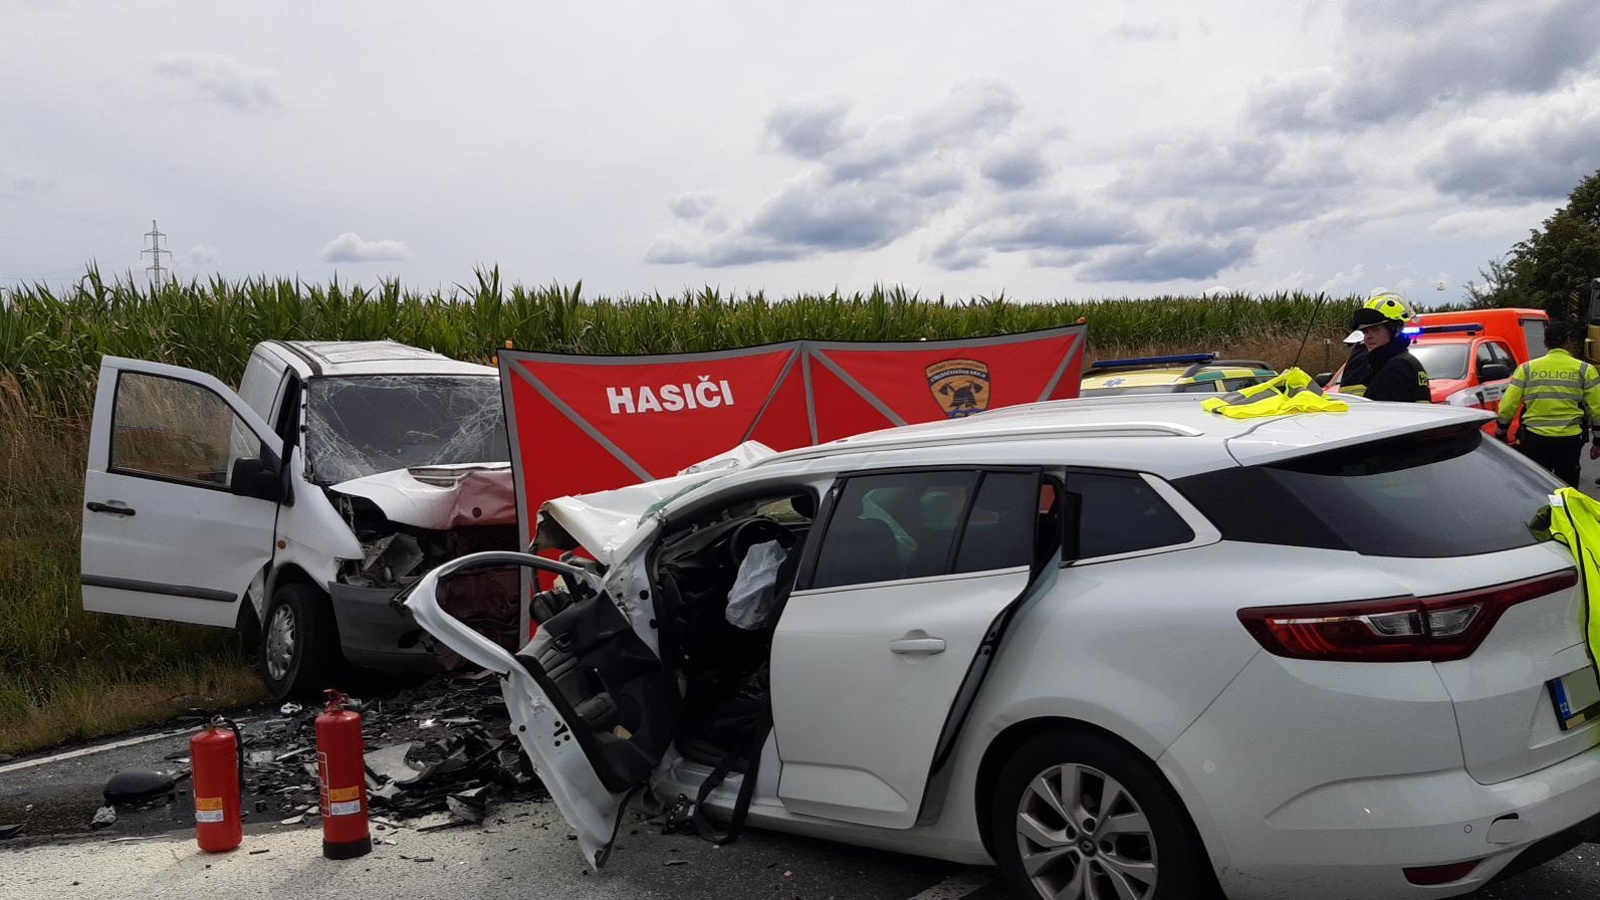 001-Tragická nehoda dvou vozidel poblíž Kácova na Kutnohorsk.jpg